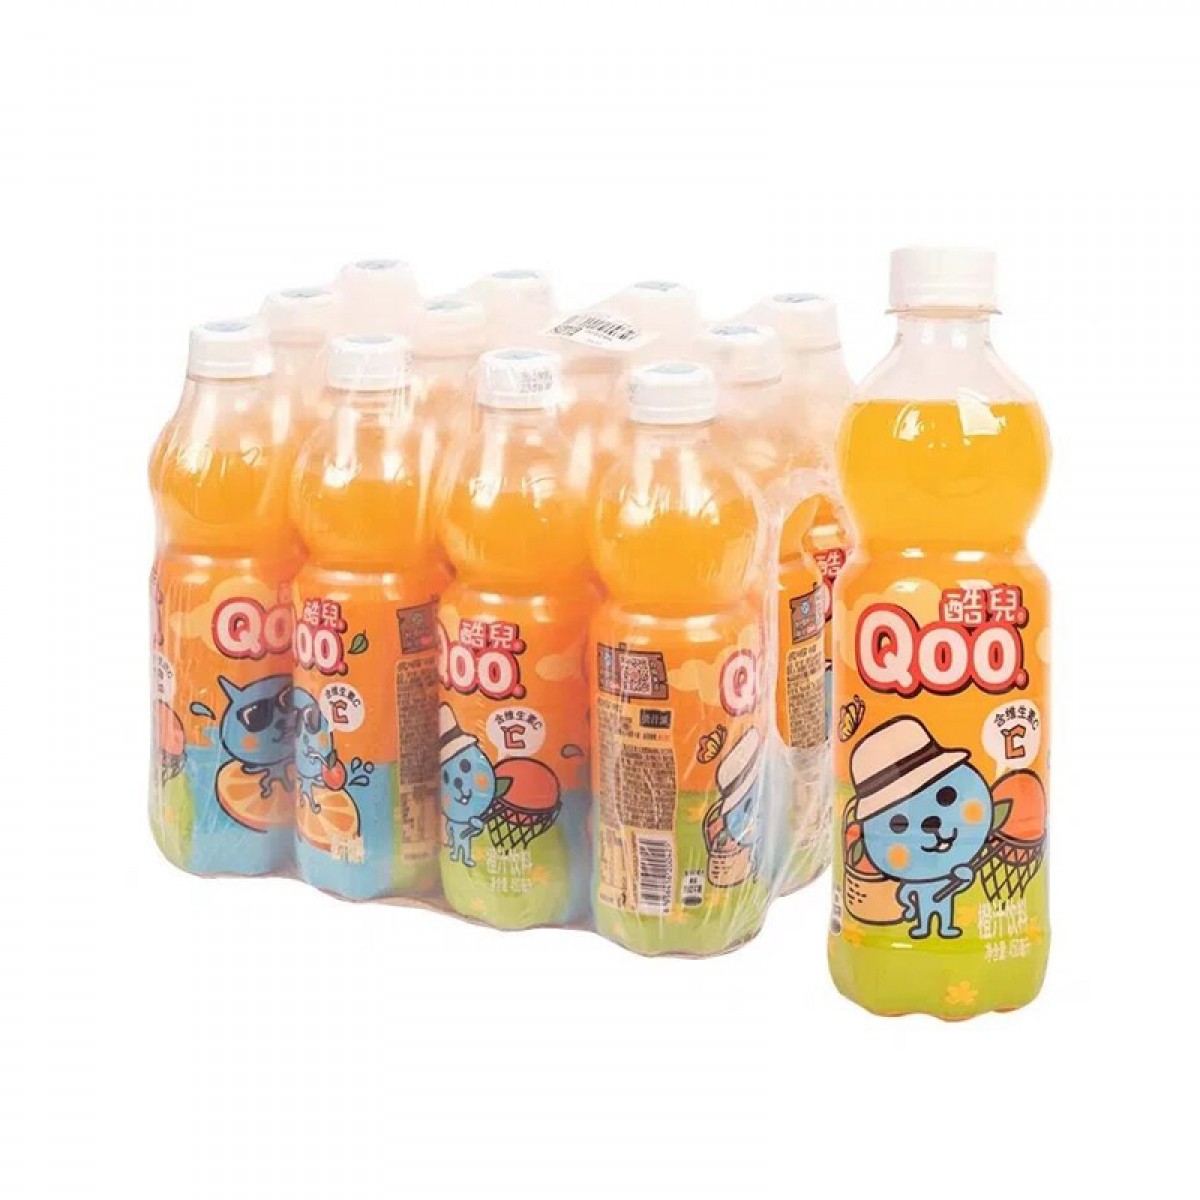 可口可乐 酷儿橙汁 450mlX12瓶  整箱装